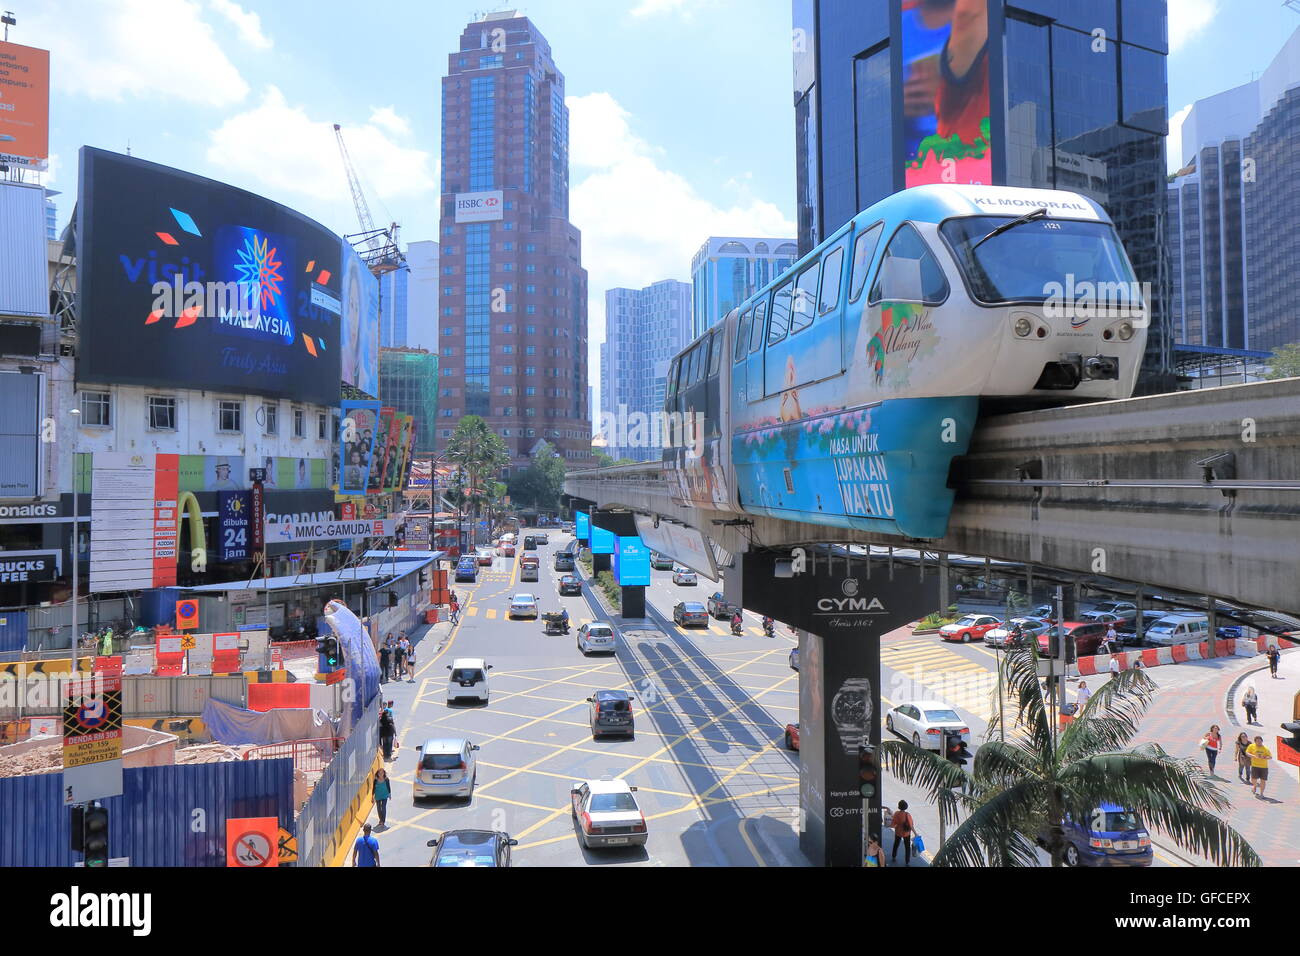 Bintang walk in Bukit Bintang und Einschienenbahn in Kuala Lumpur Malaysia. Stockfoto